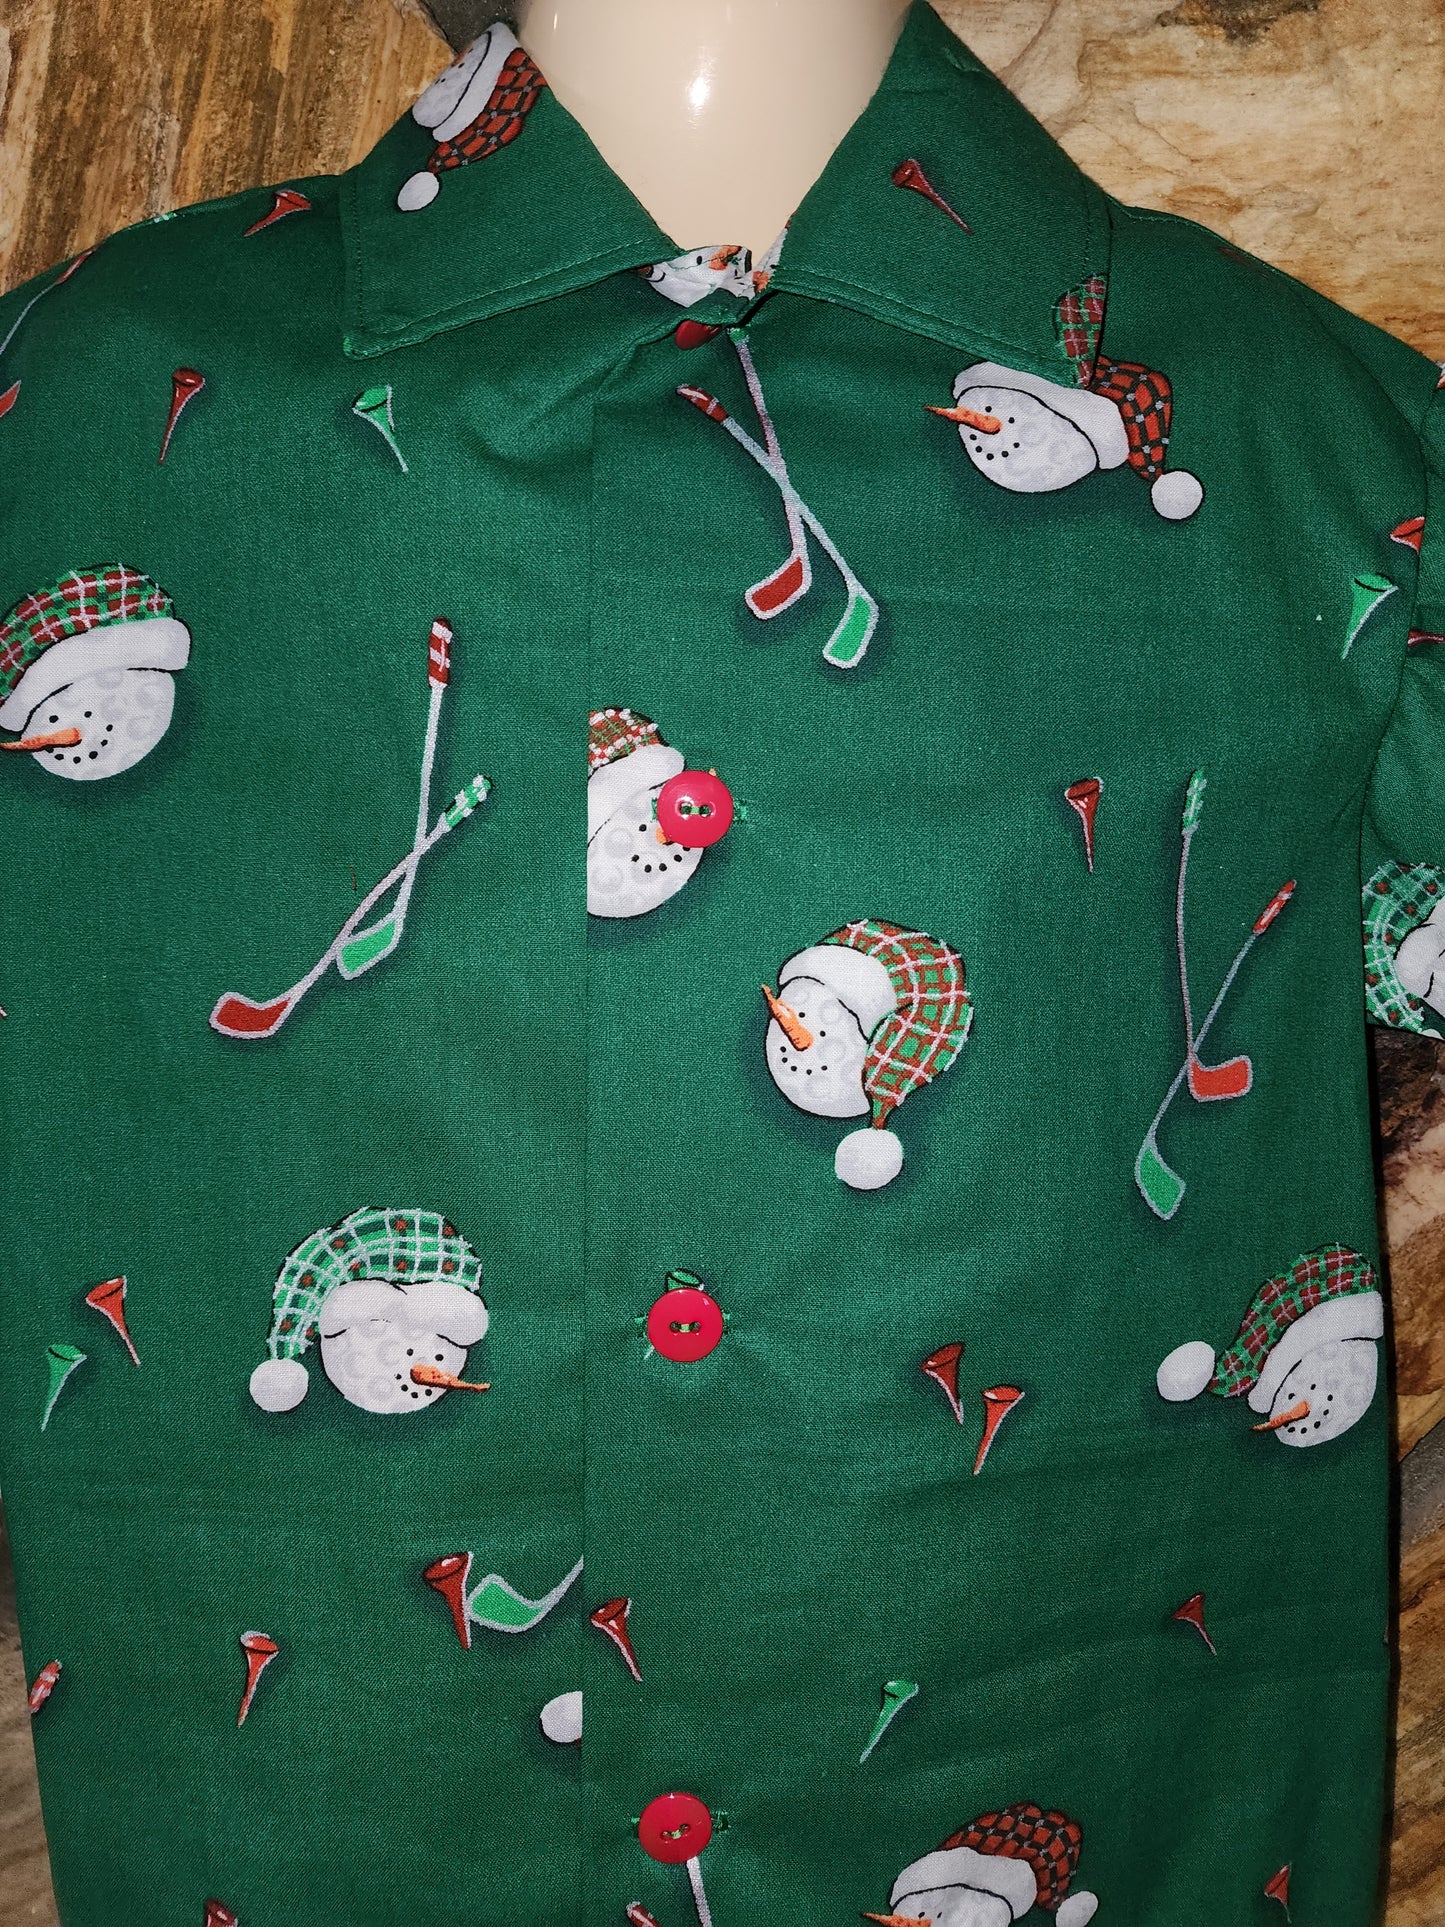 Golf Ball Snowman Shirt